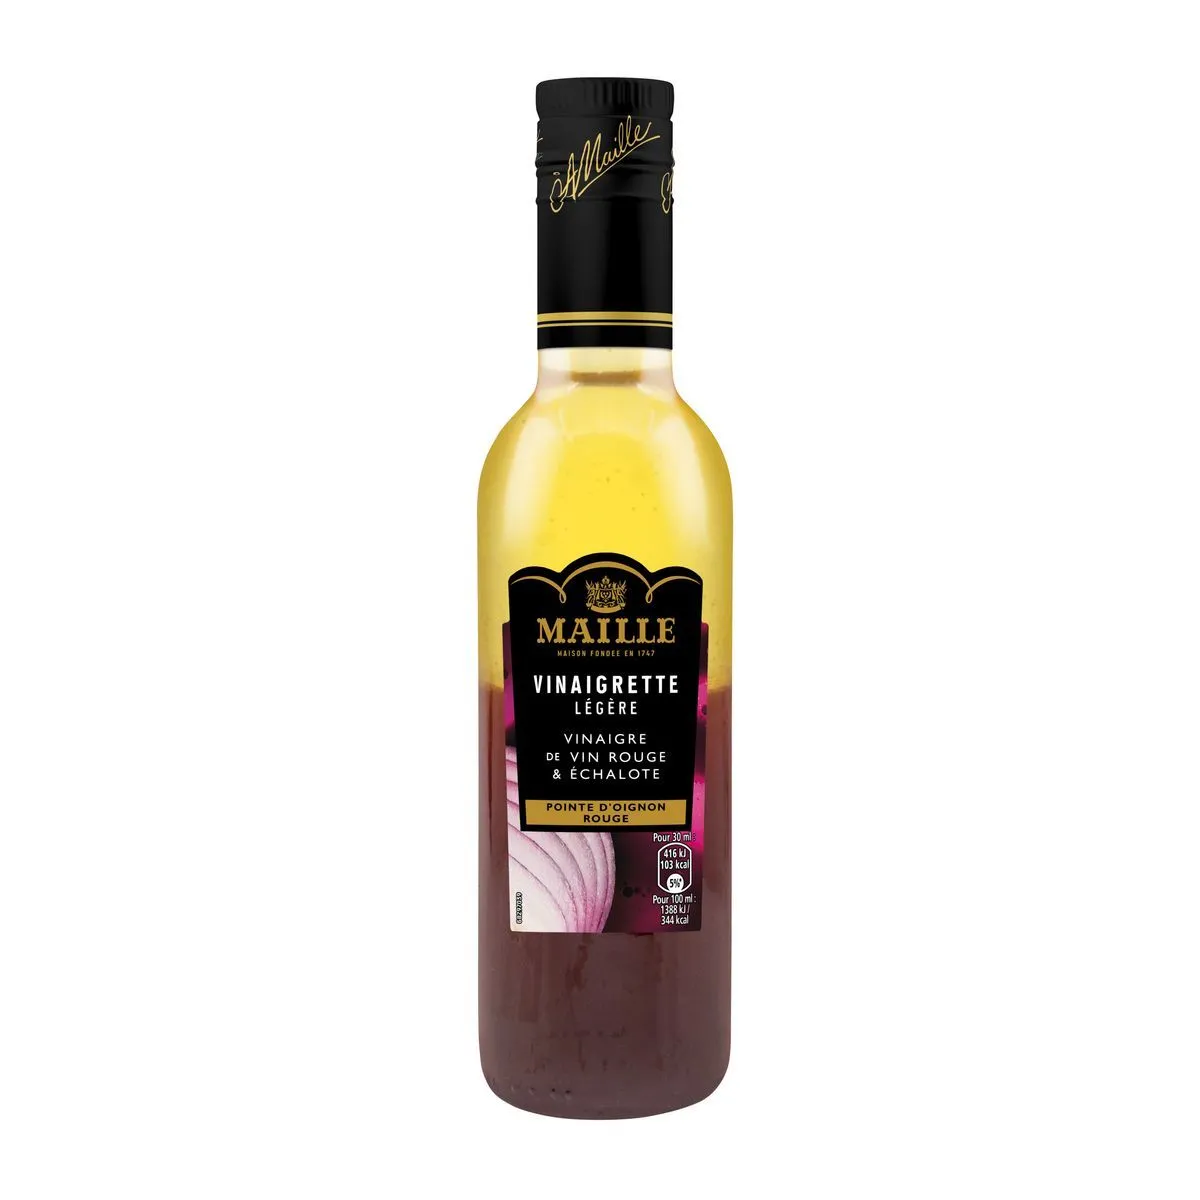  vinaigrette légère vinaigre de vin rouge échalote maille